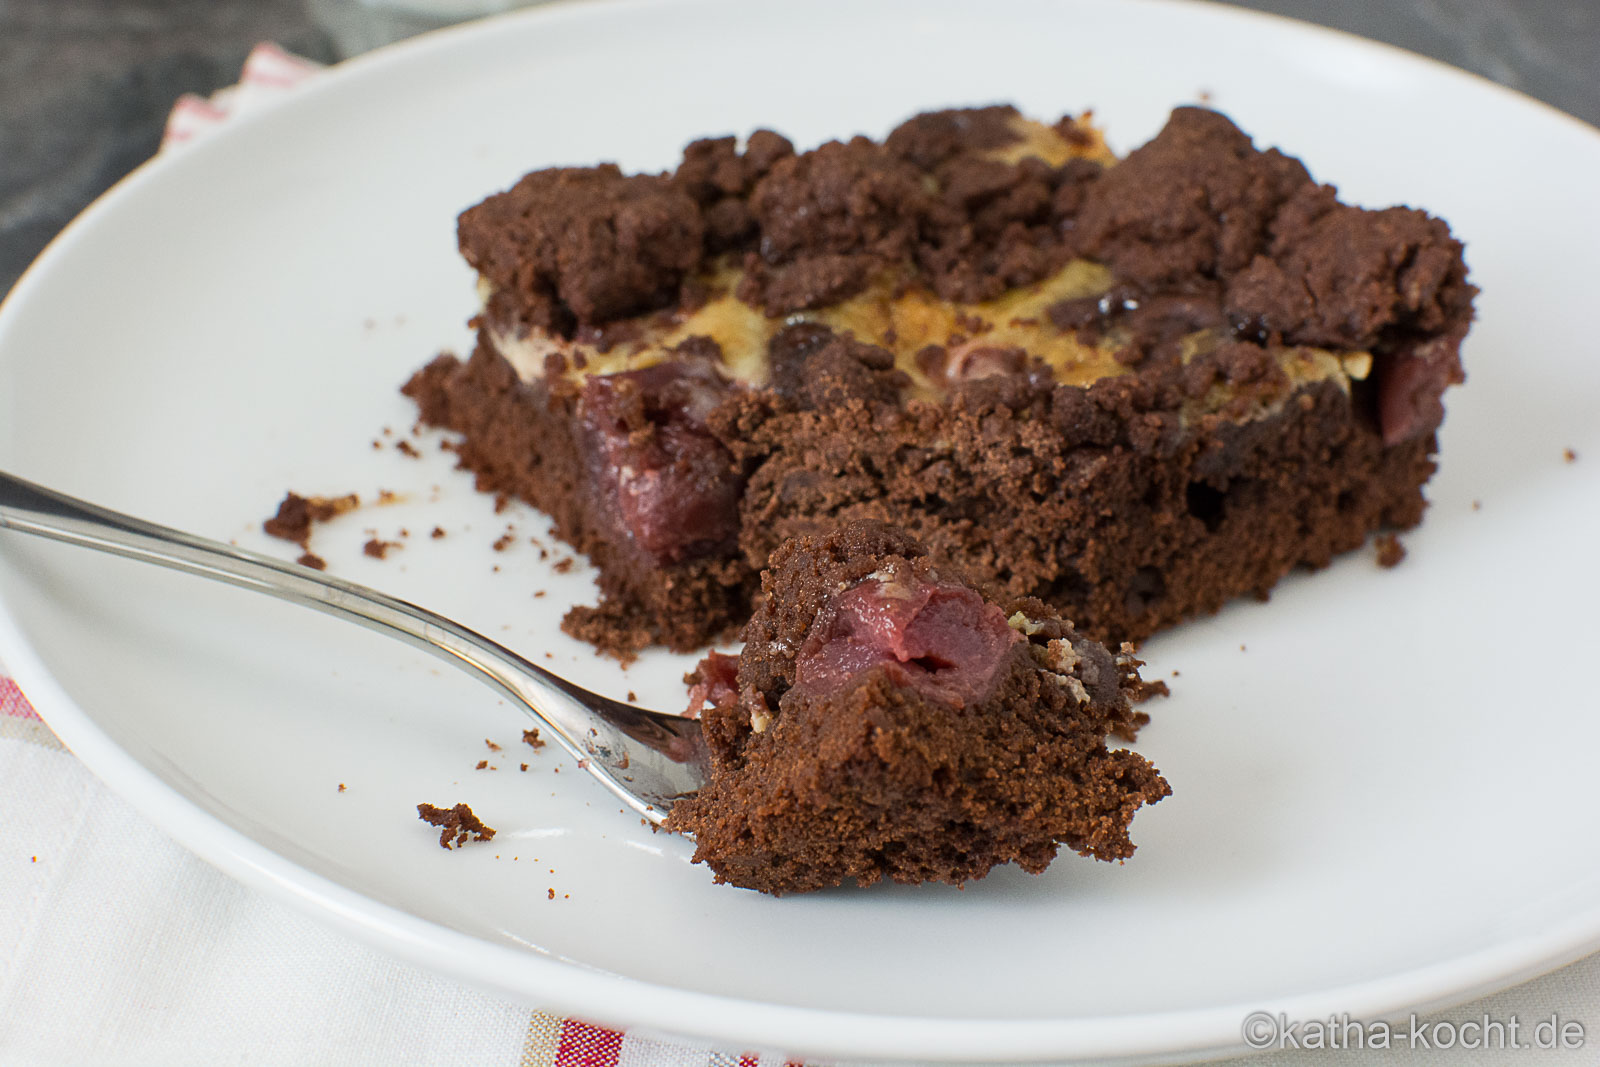 Schokoladenkuchen mit Kirschen und Streuseln vom Blech - Katha-kocht!